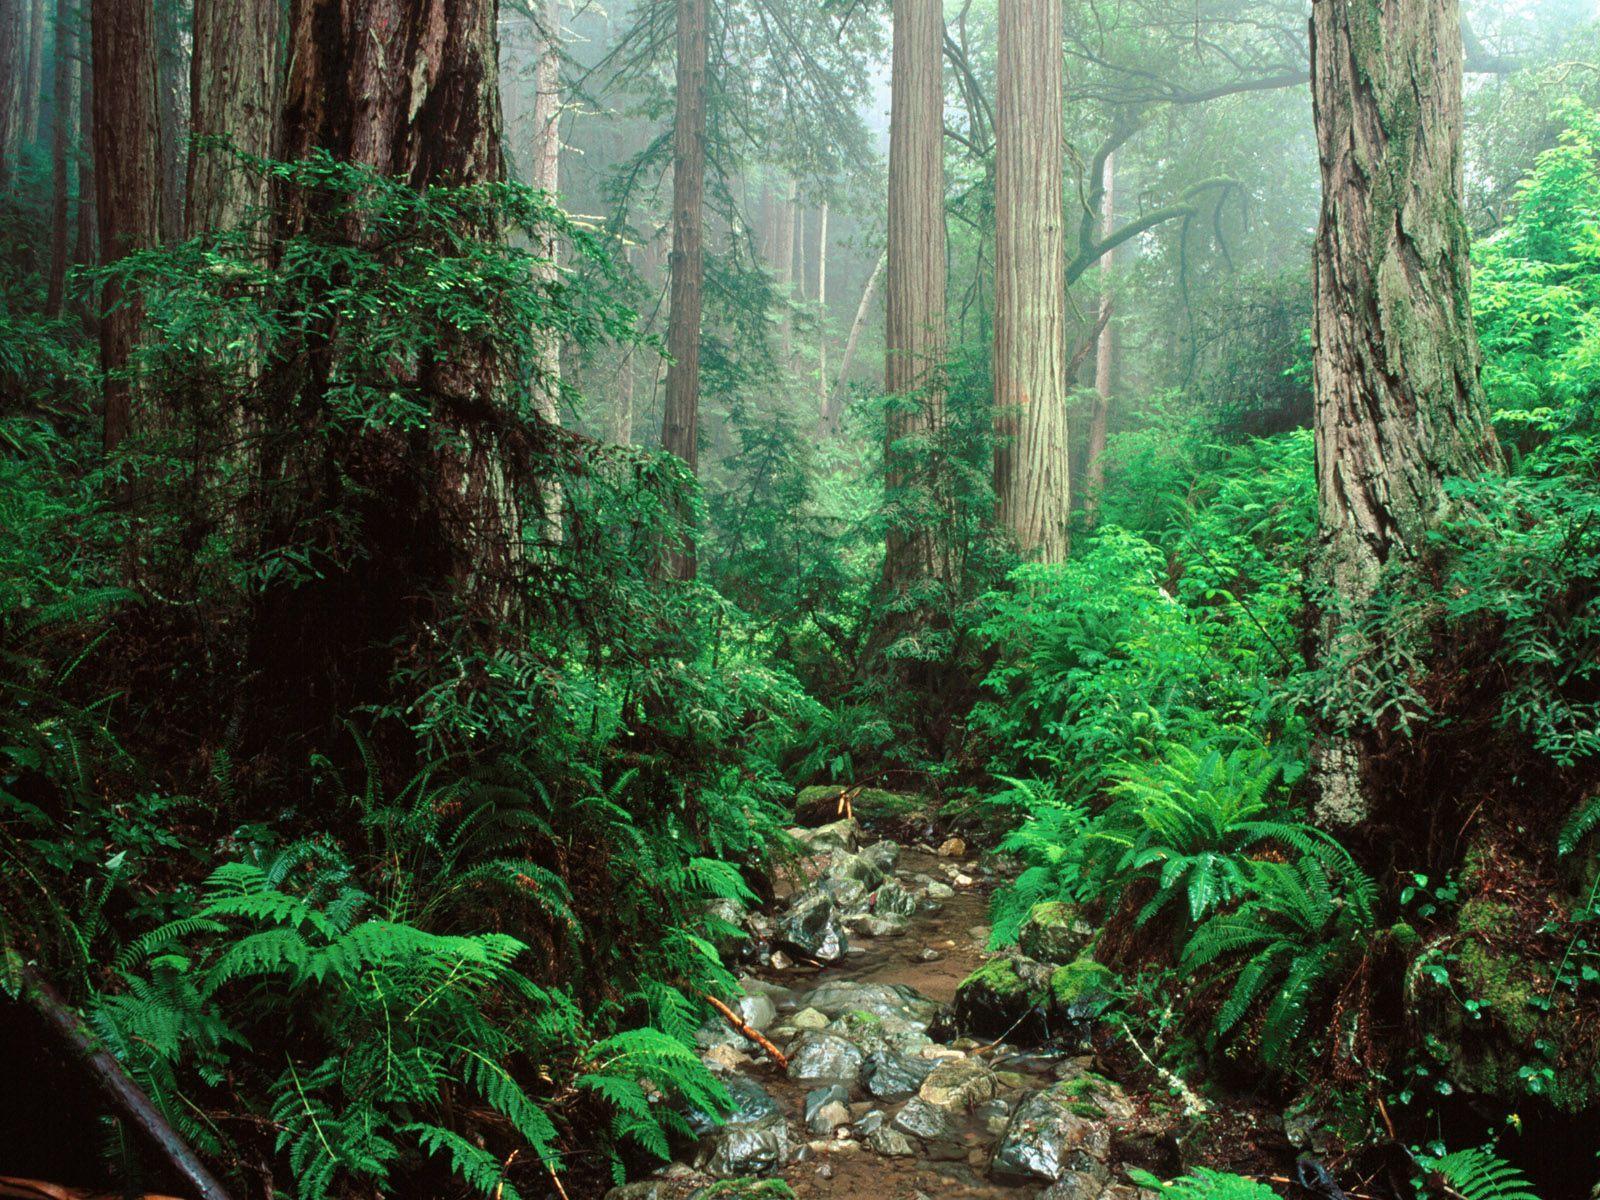 1K Redwood Forest Pictures  Download Free Images on Unsplash